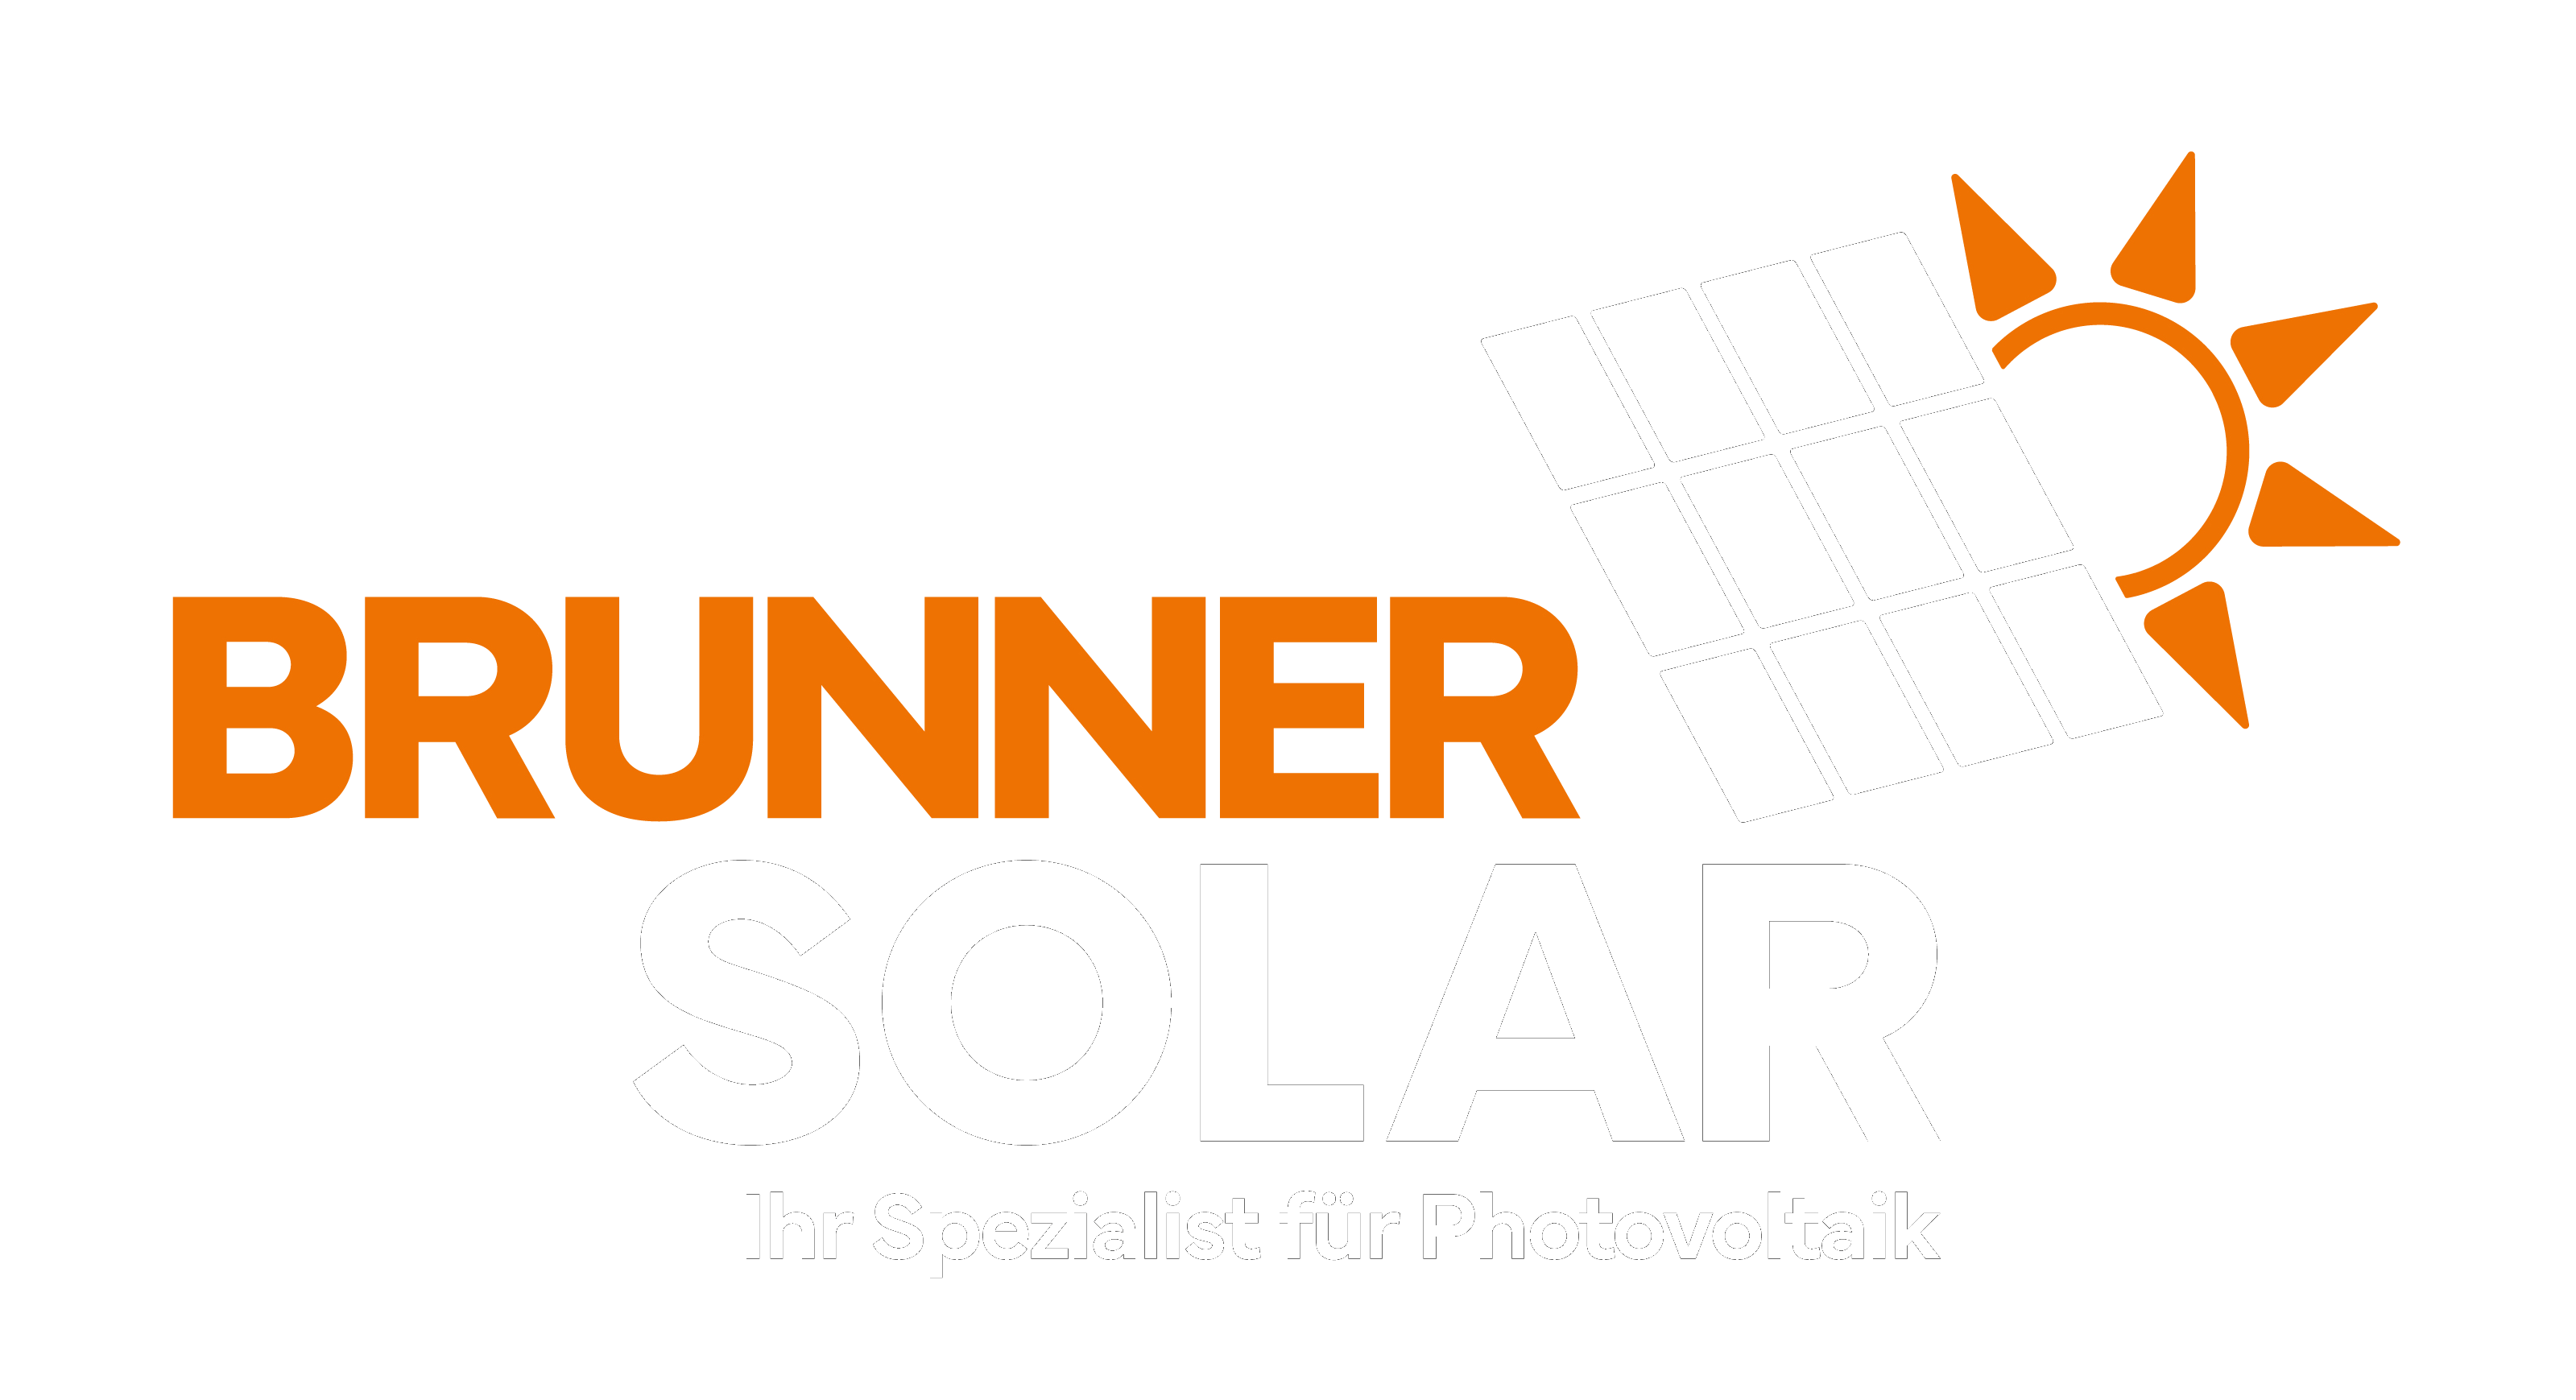 Brunner Solar - Photovoltaik für Ihr Eigenheim